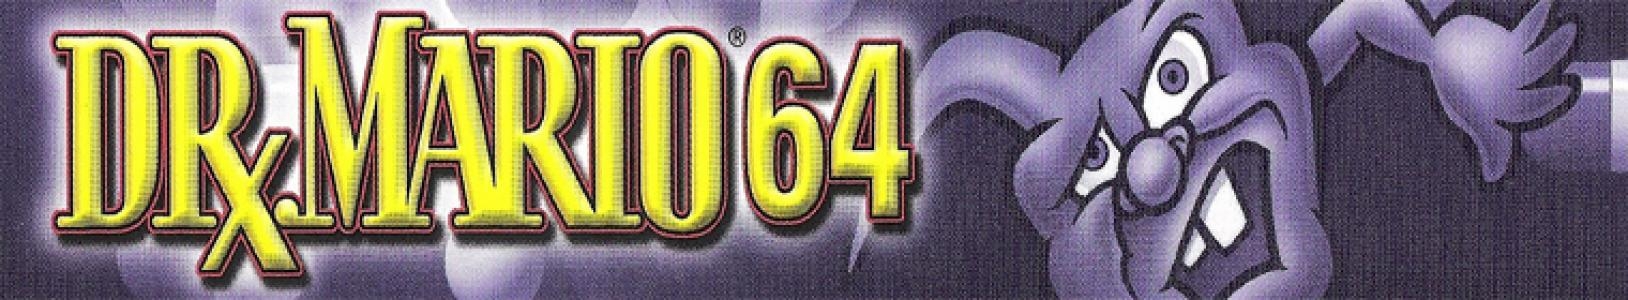 Dr. Mario 64 banner